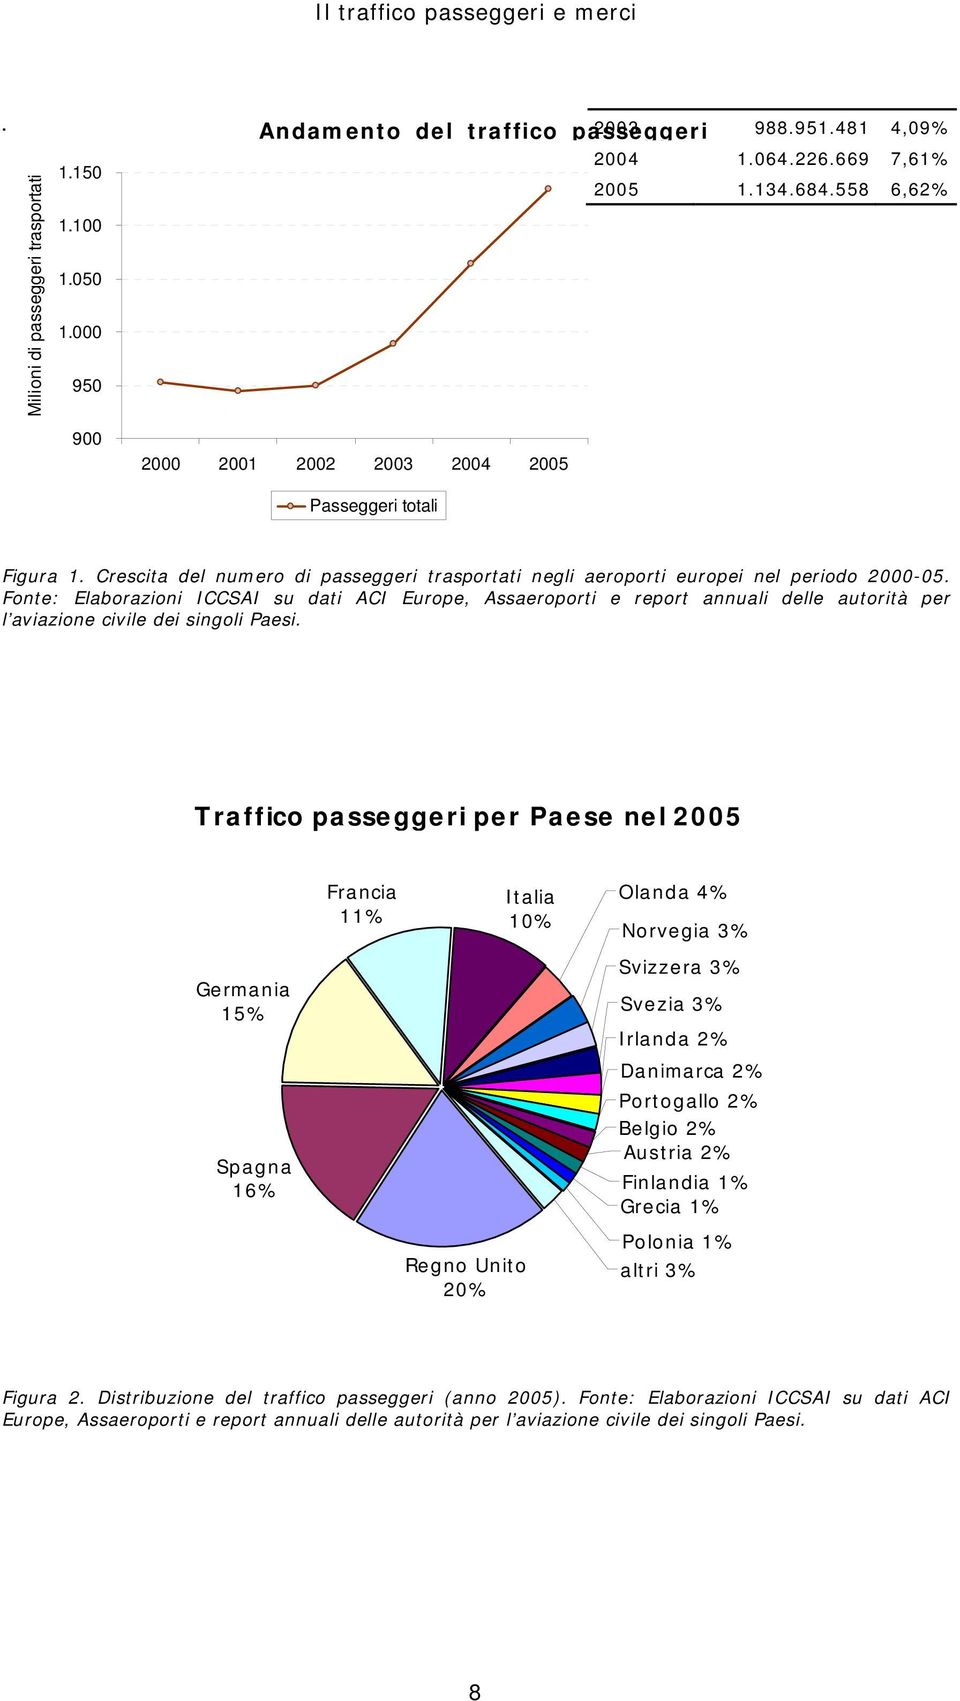 Fonte: Elaborazioni ICCSAI su dati ACI Europe, Assaeroporti e report annuali delle autorità per l aviazione civile dei singoli Paesi.